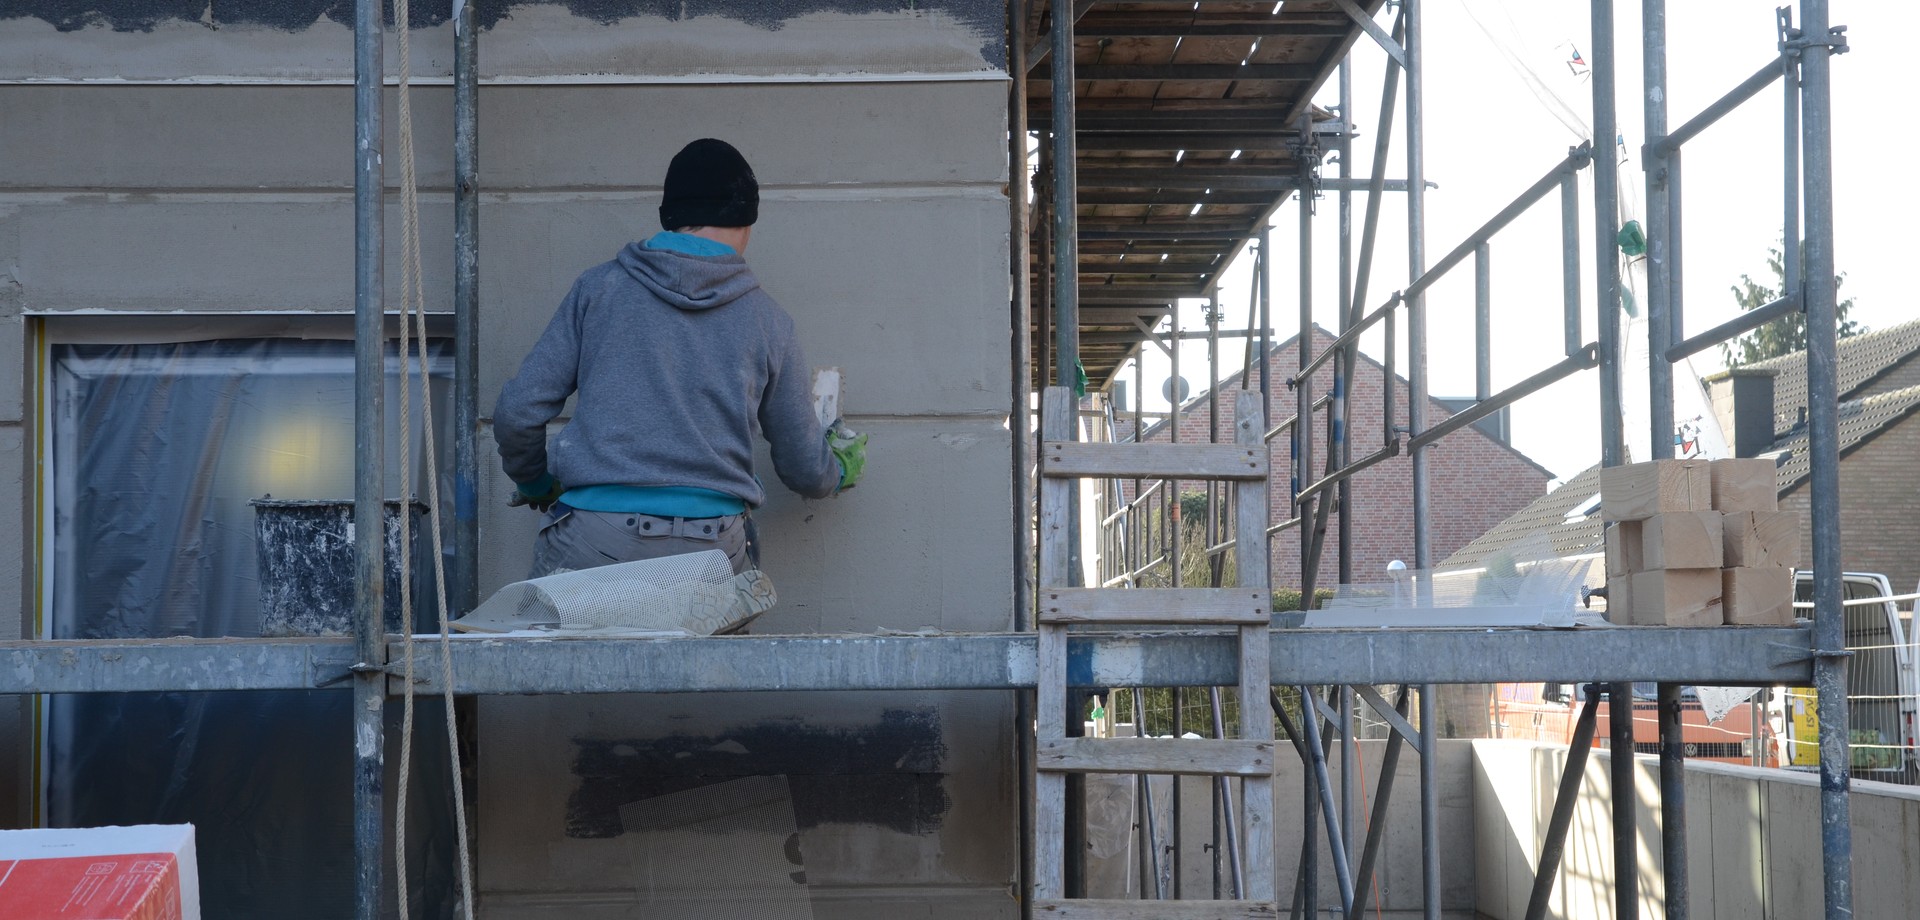 Bauarbeiter auf einem Baugerüst der eine Wand verputzt